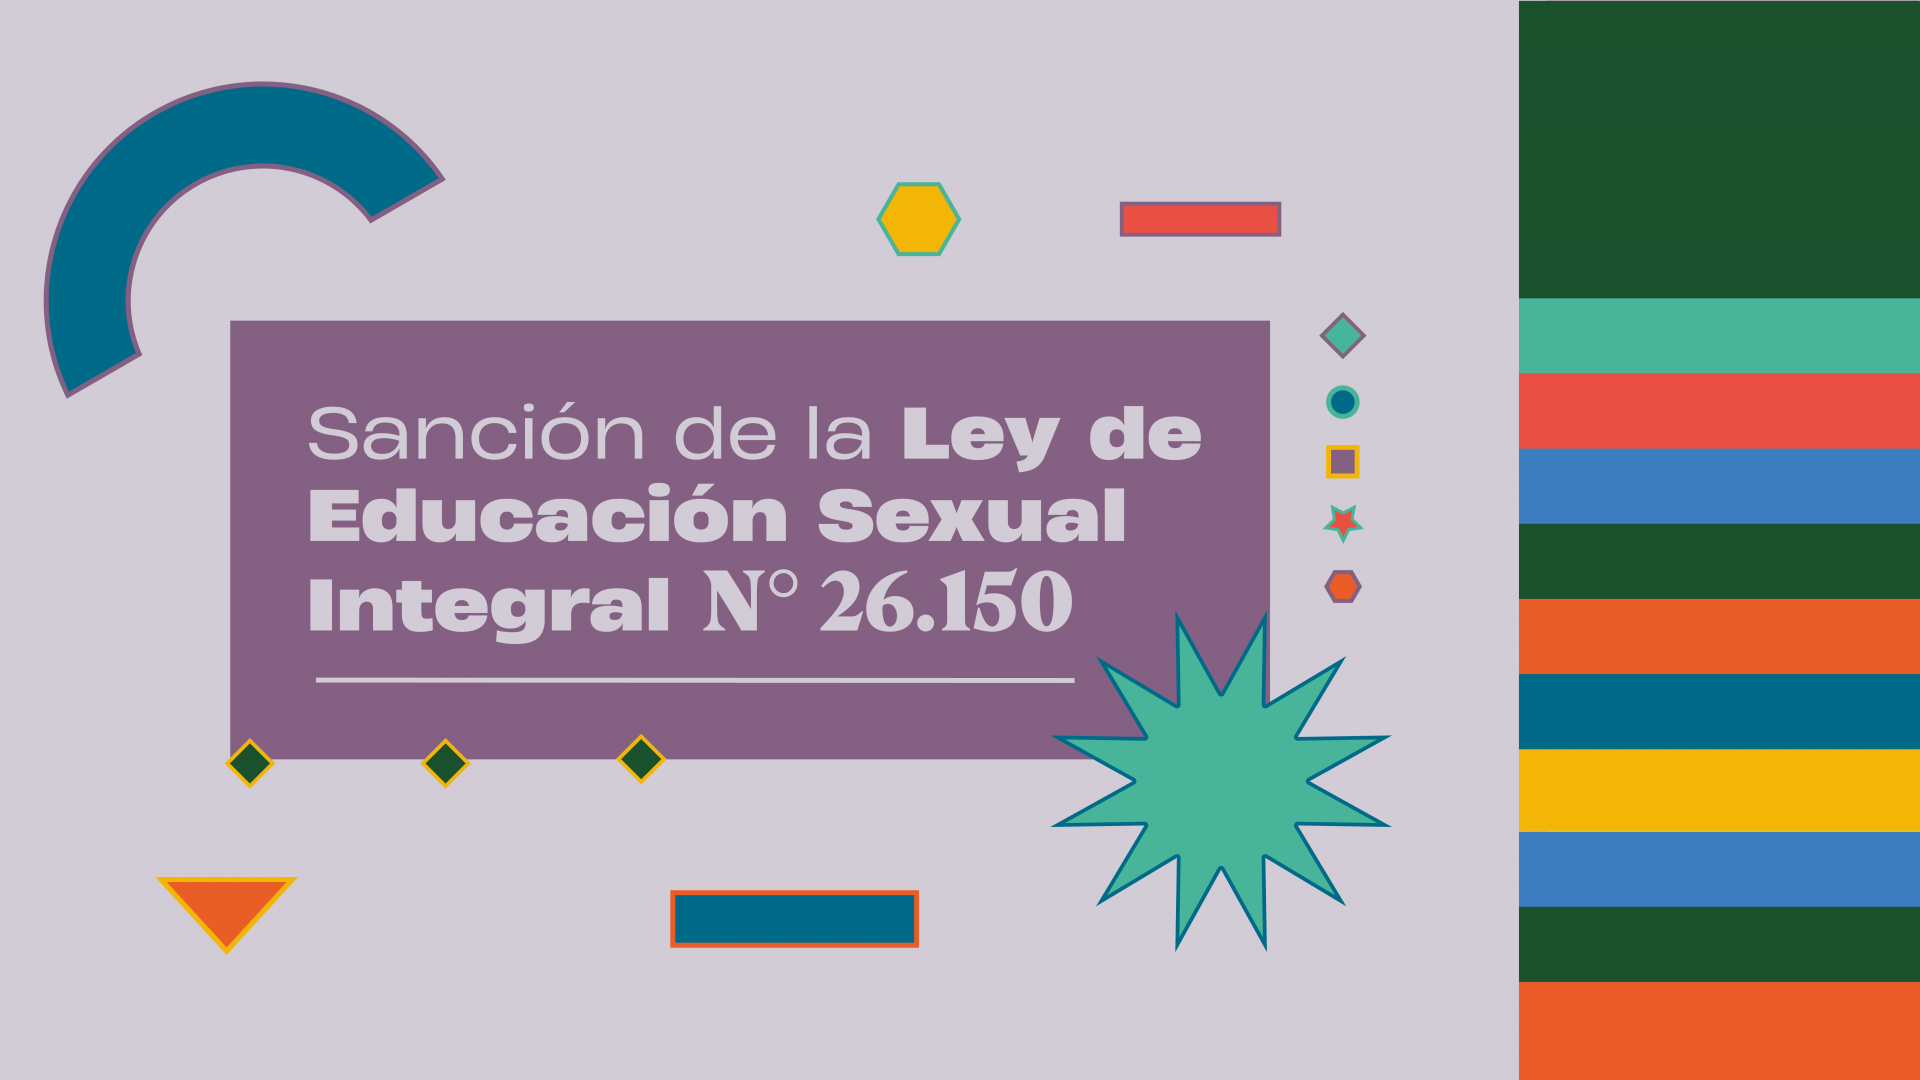 Se cumplen 17 años de la sanción de la Ley de Educación Sexual Integral